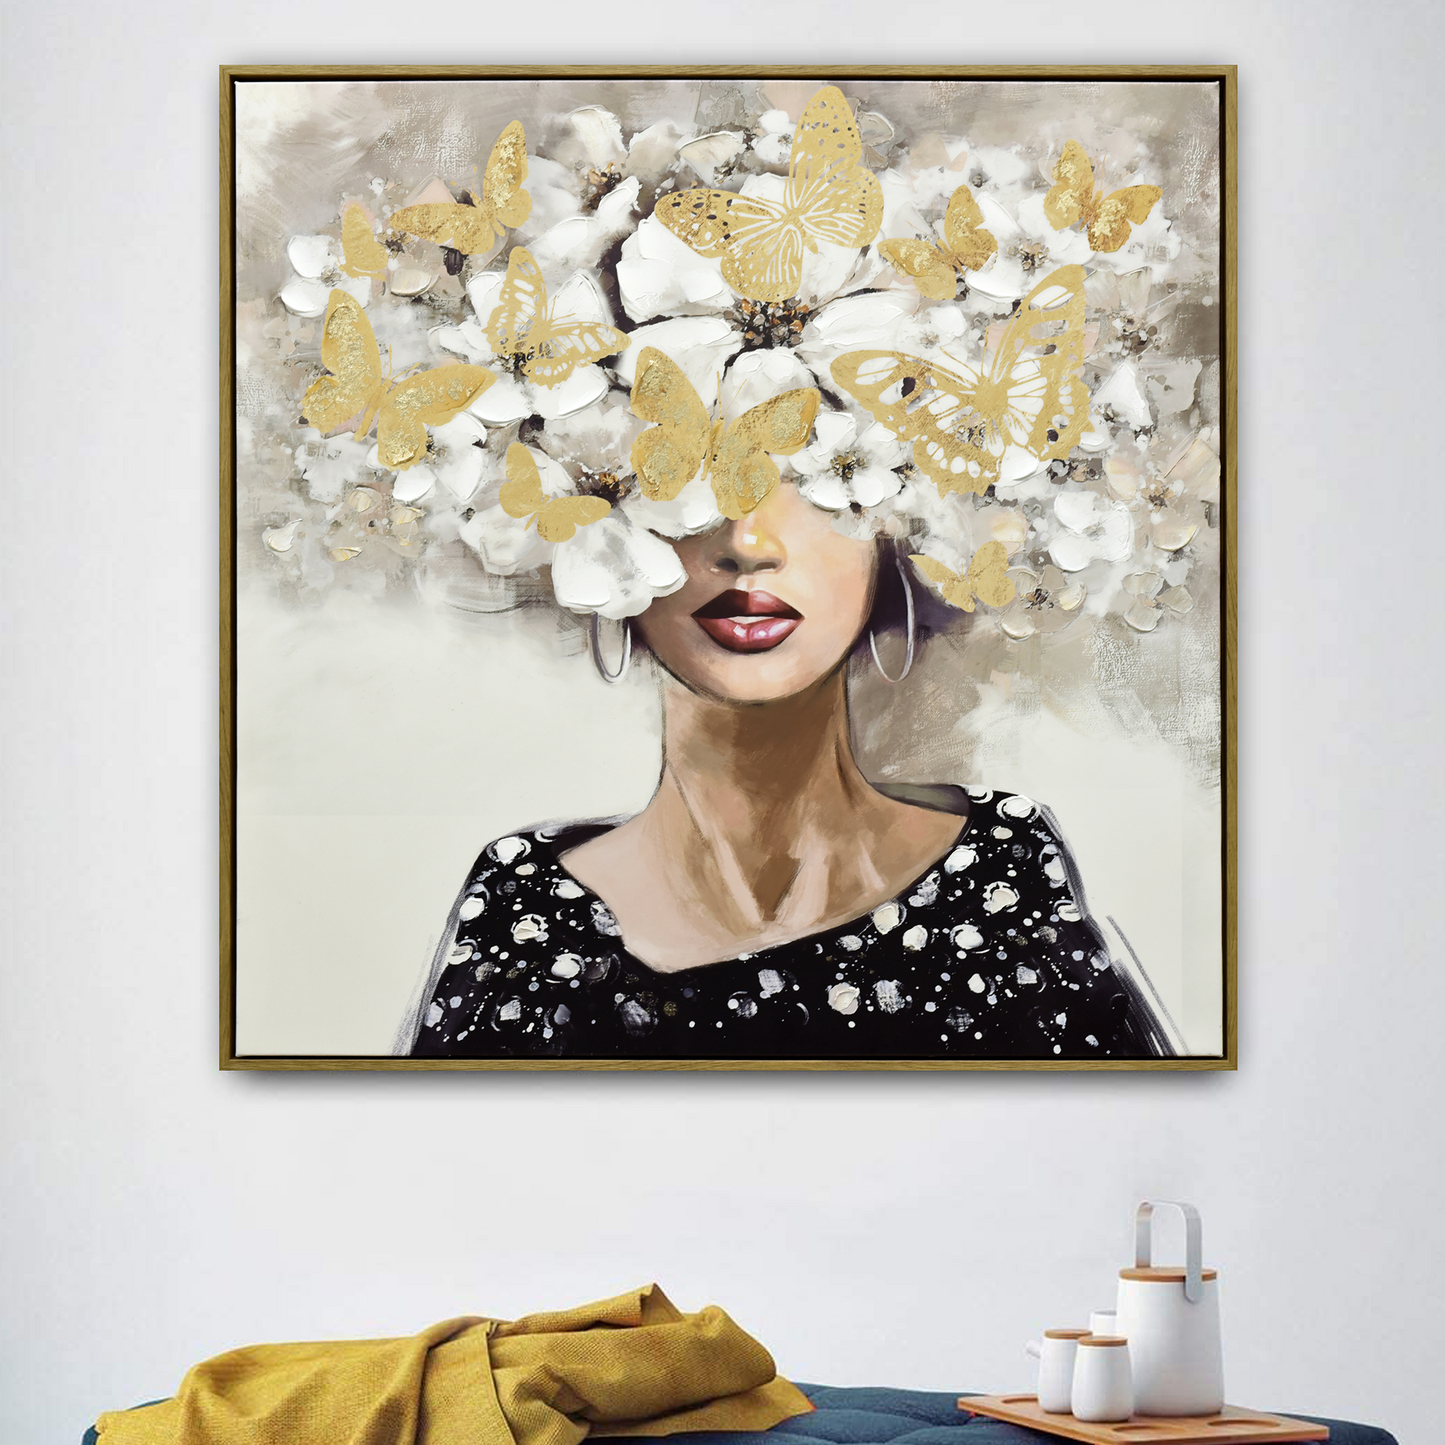 80X80cm Floral Fantasia Dark Wood Framed Canvas Wall Art